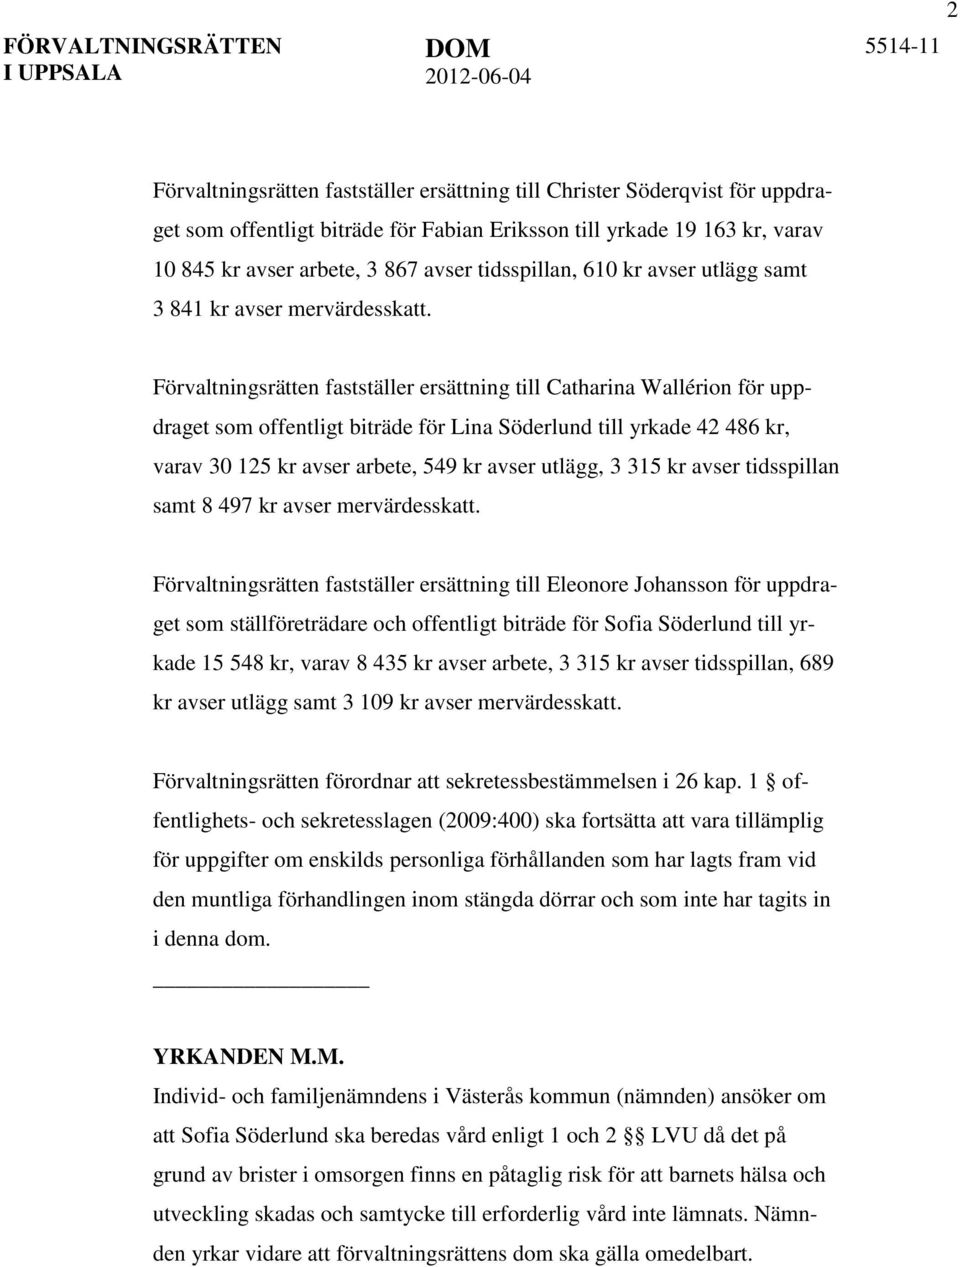 Förvaltningsrätten fastställer ersättning till Catharina Wallérion för uppdraget som offentligt biträde för Lina Söderlund till yrkade 42 486 kr, varav 30 125 kr avser arbete, 549 kr avser utlägg, 3